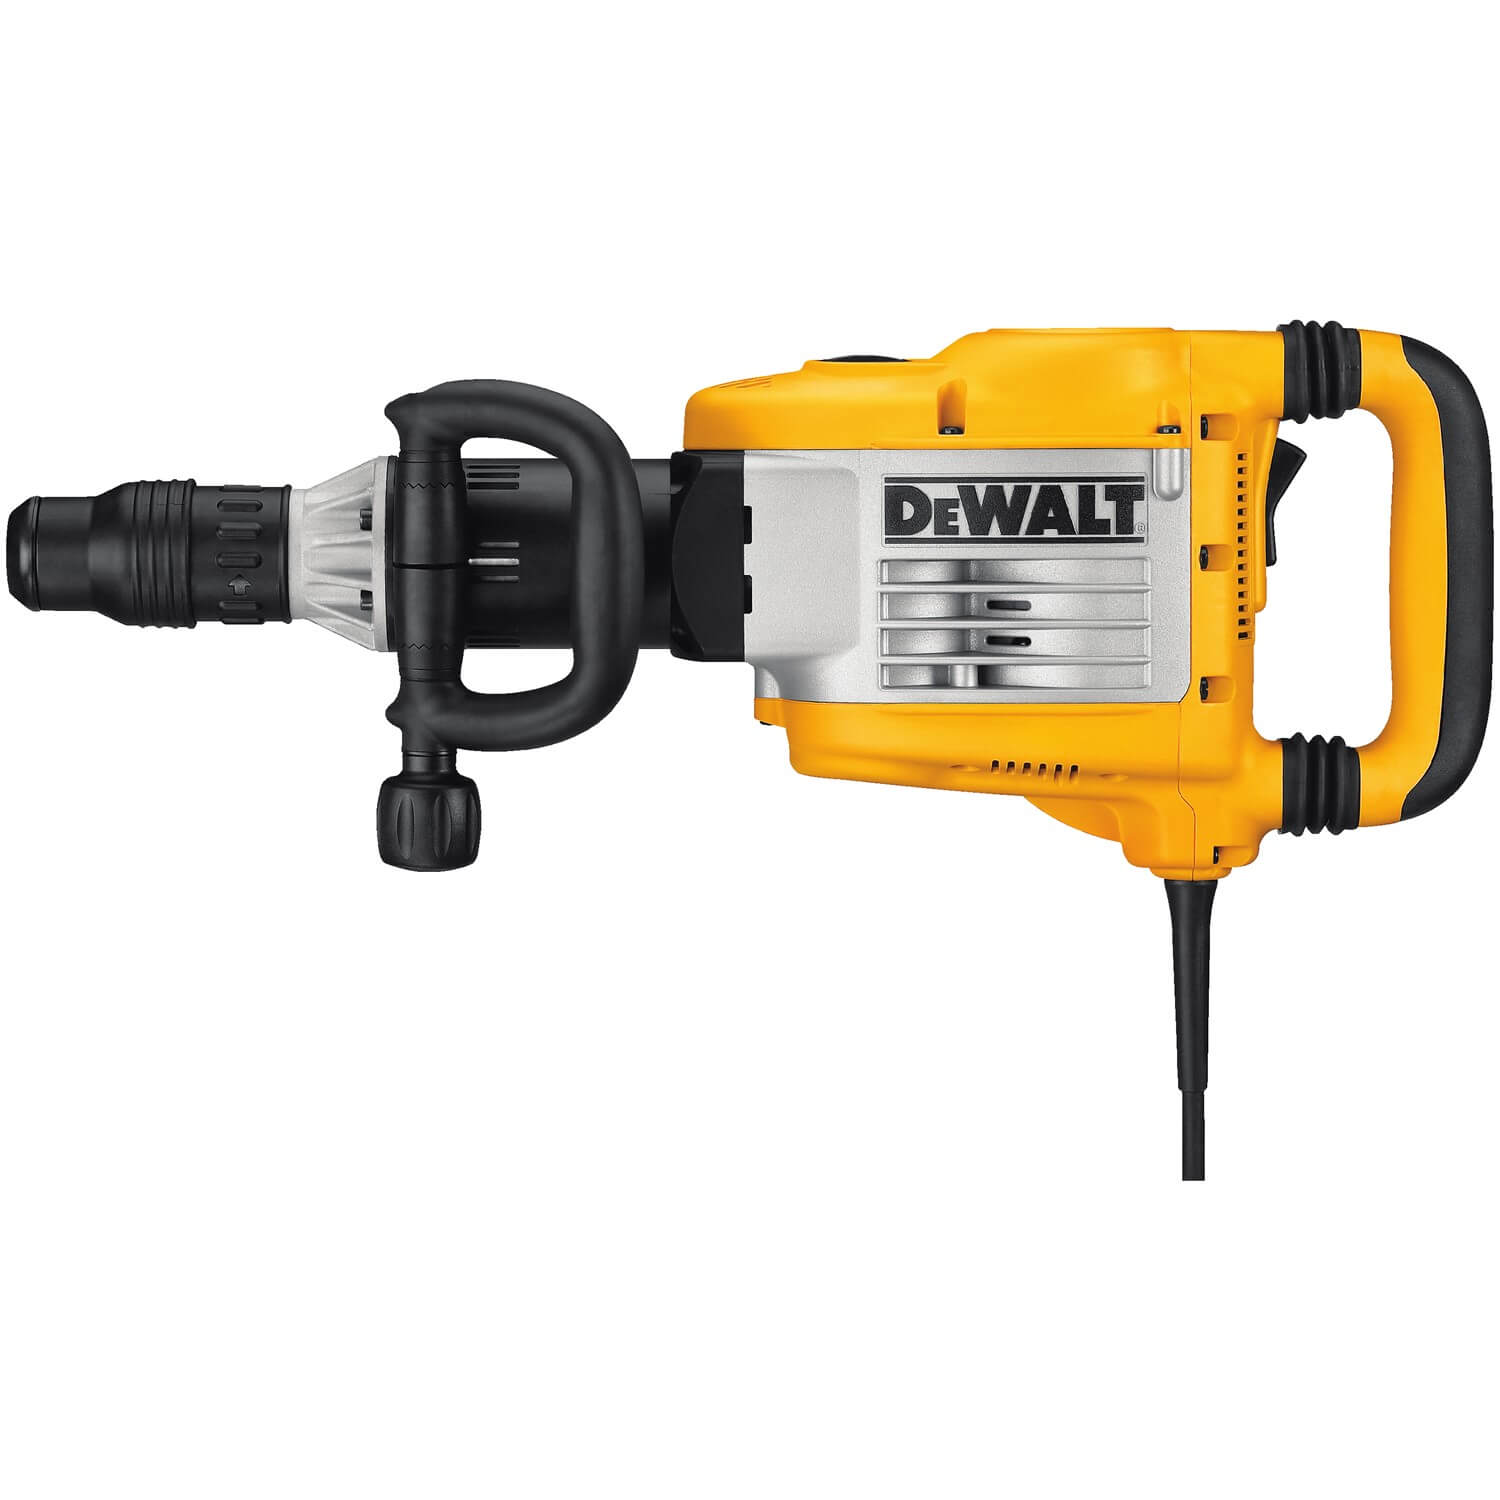 Dewalt D25901K - 23 lb. SDS Max Demolition Hammer w/ SHOCKS - wise-line-tools